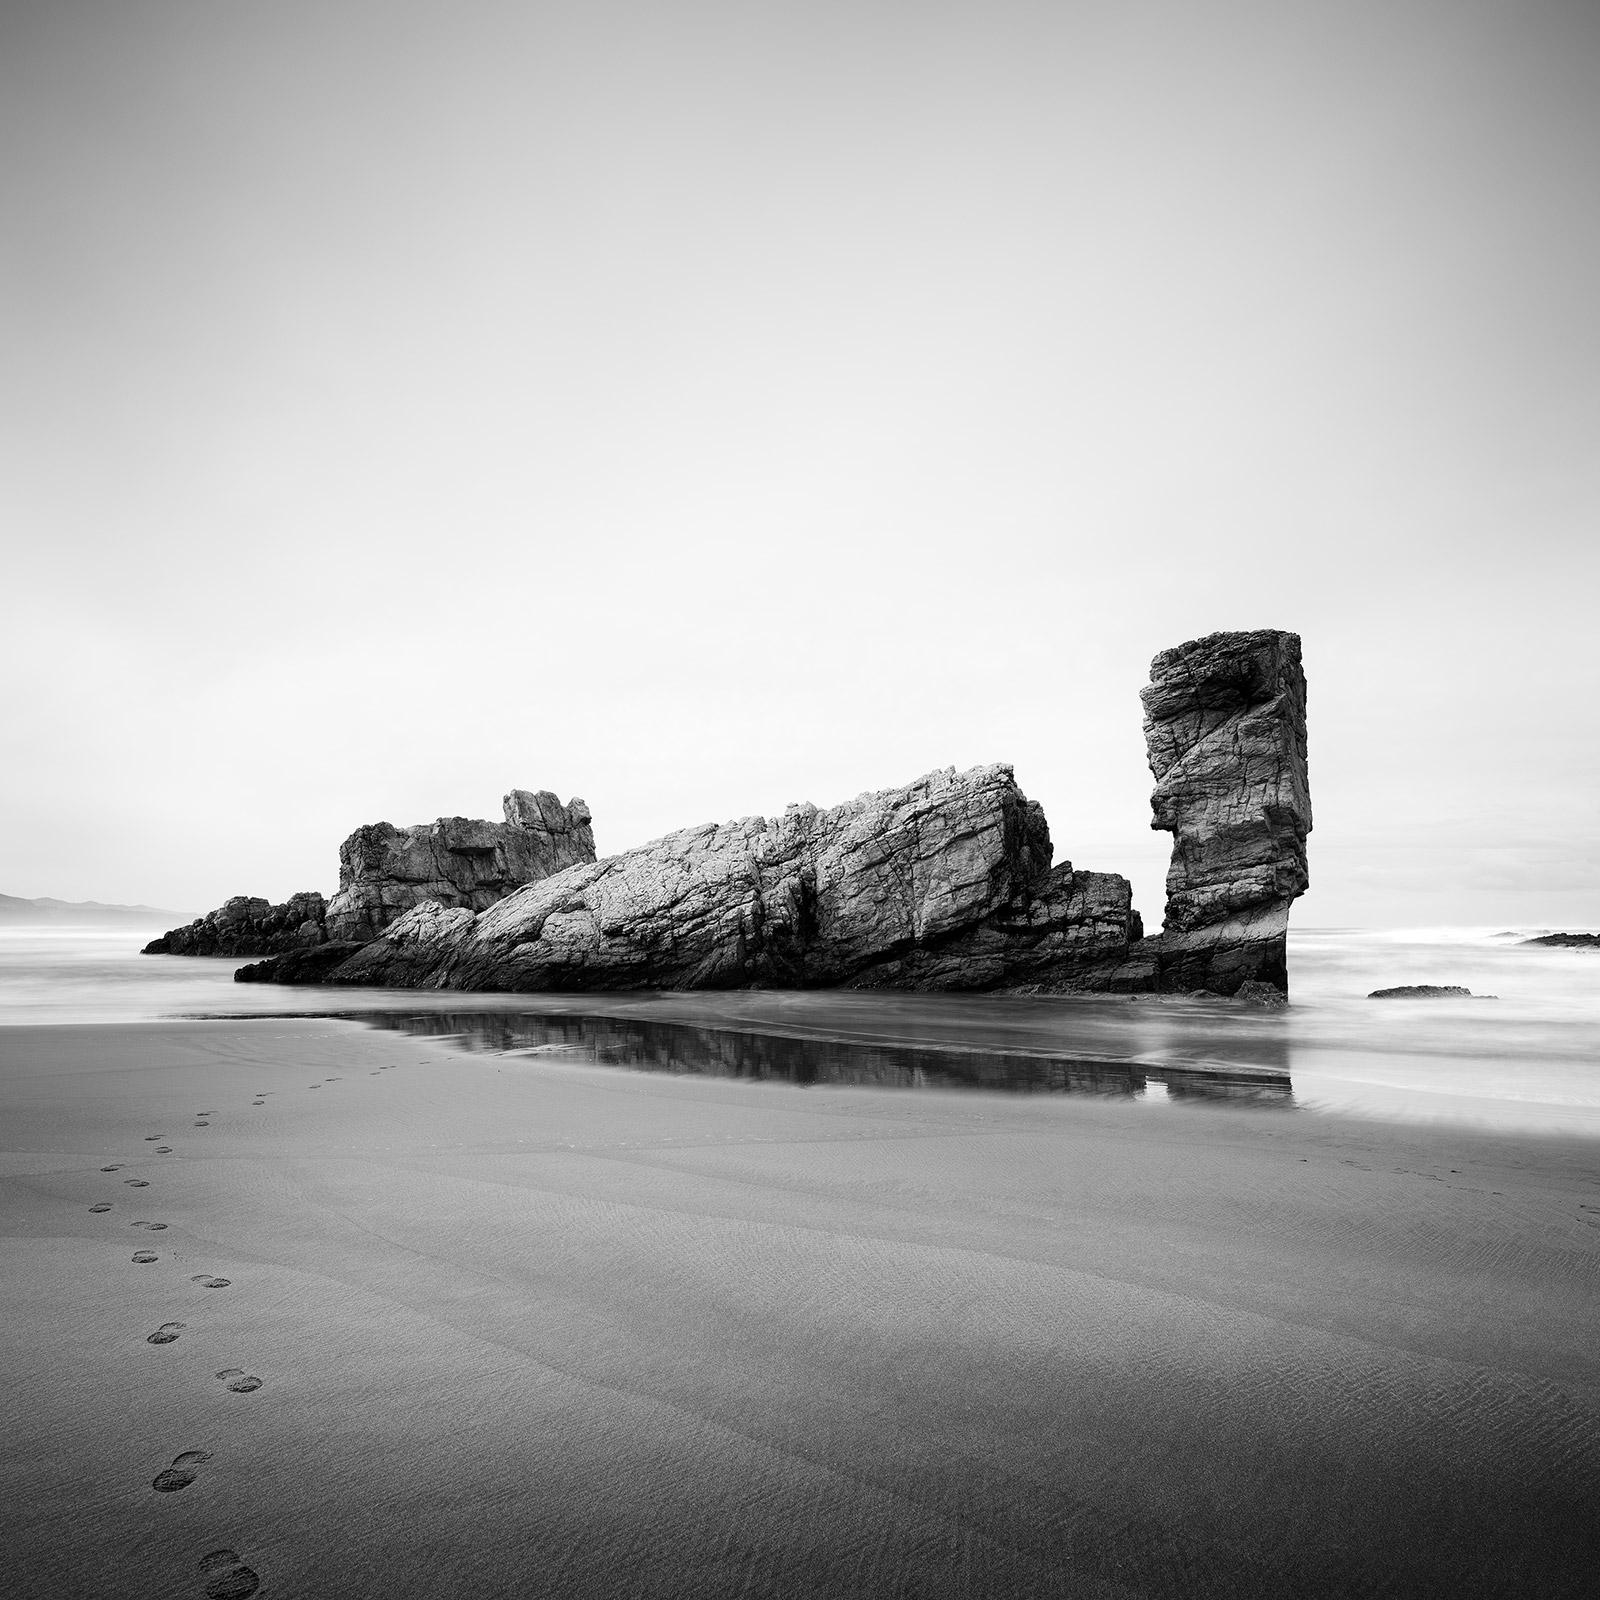 Landscape Photograph Gerald Berghammer - Golfe de Gascogne, rocher géant, plage, Espagne, photographie noir et blanc, paysage